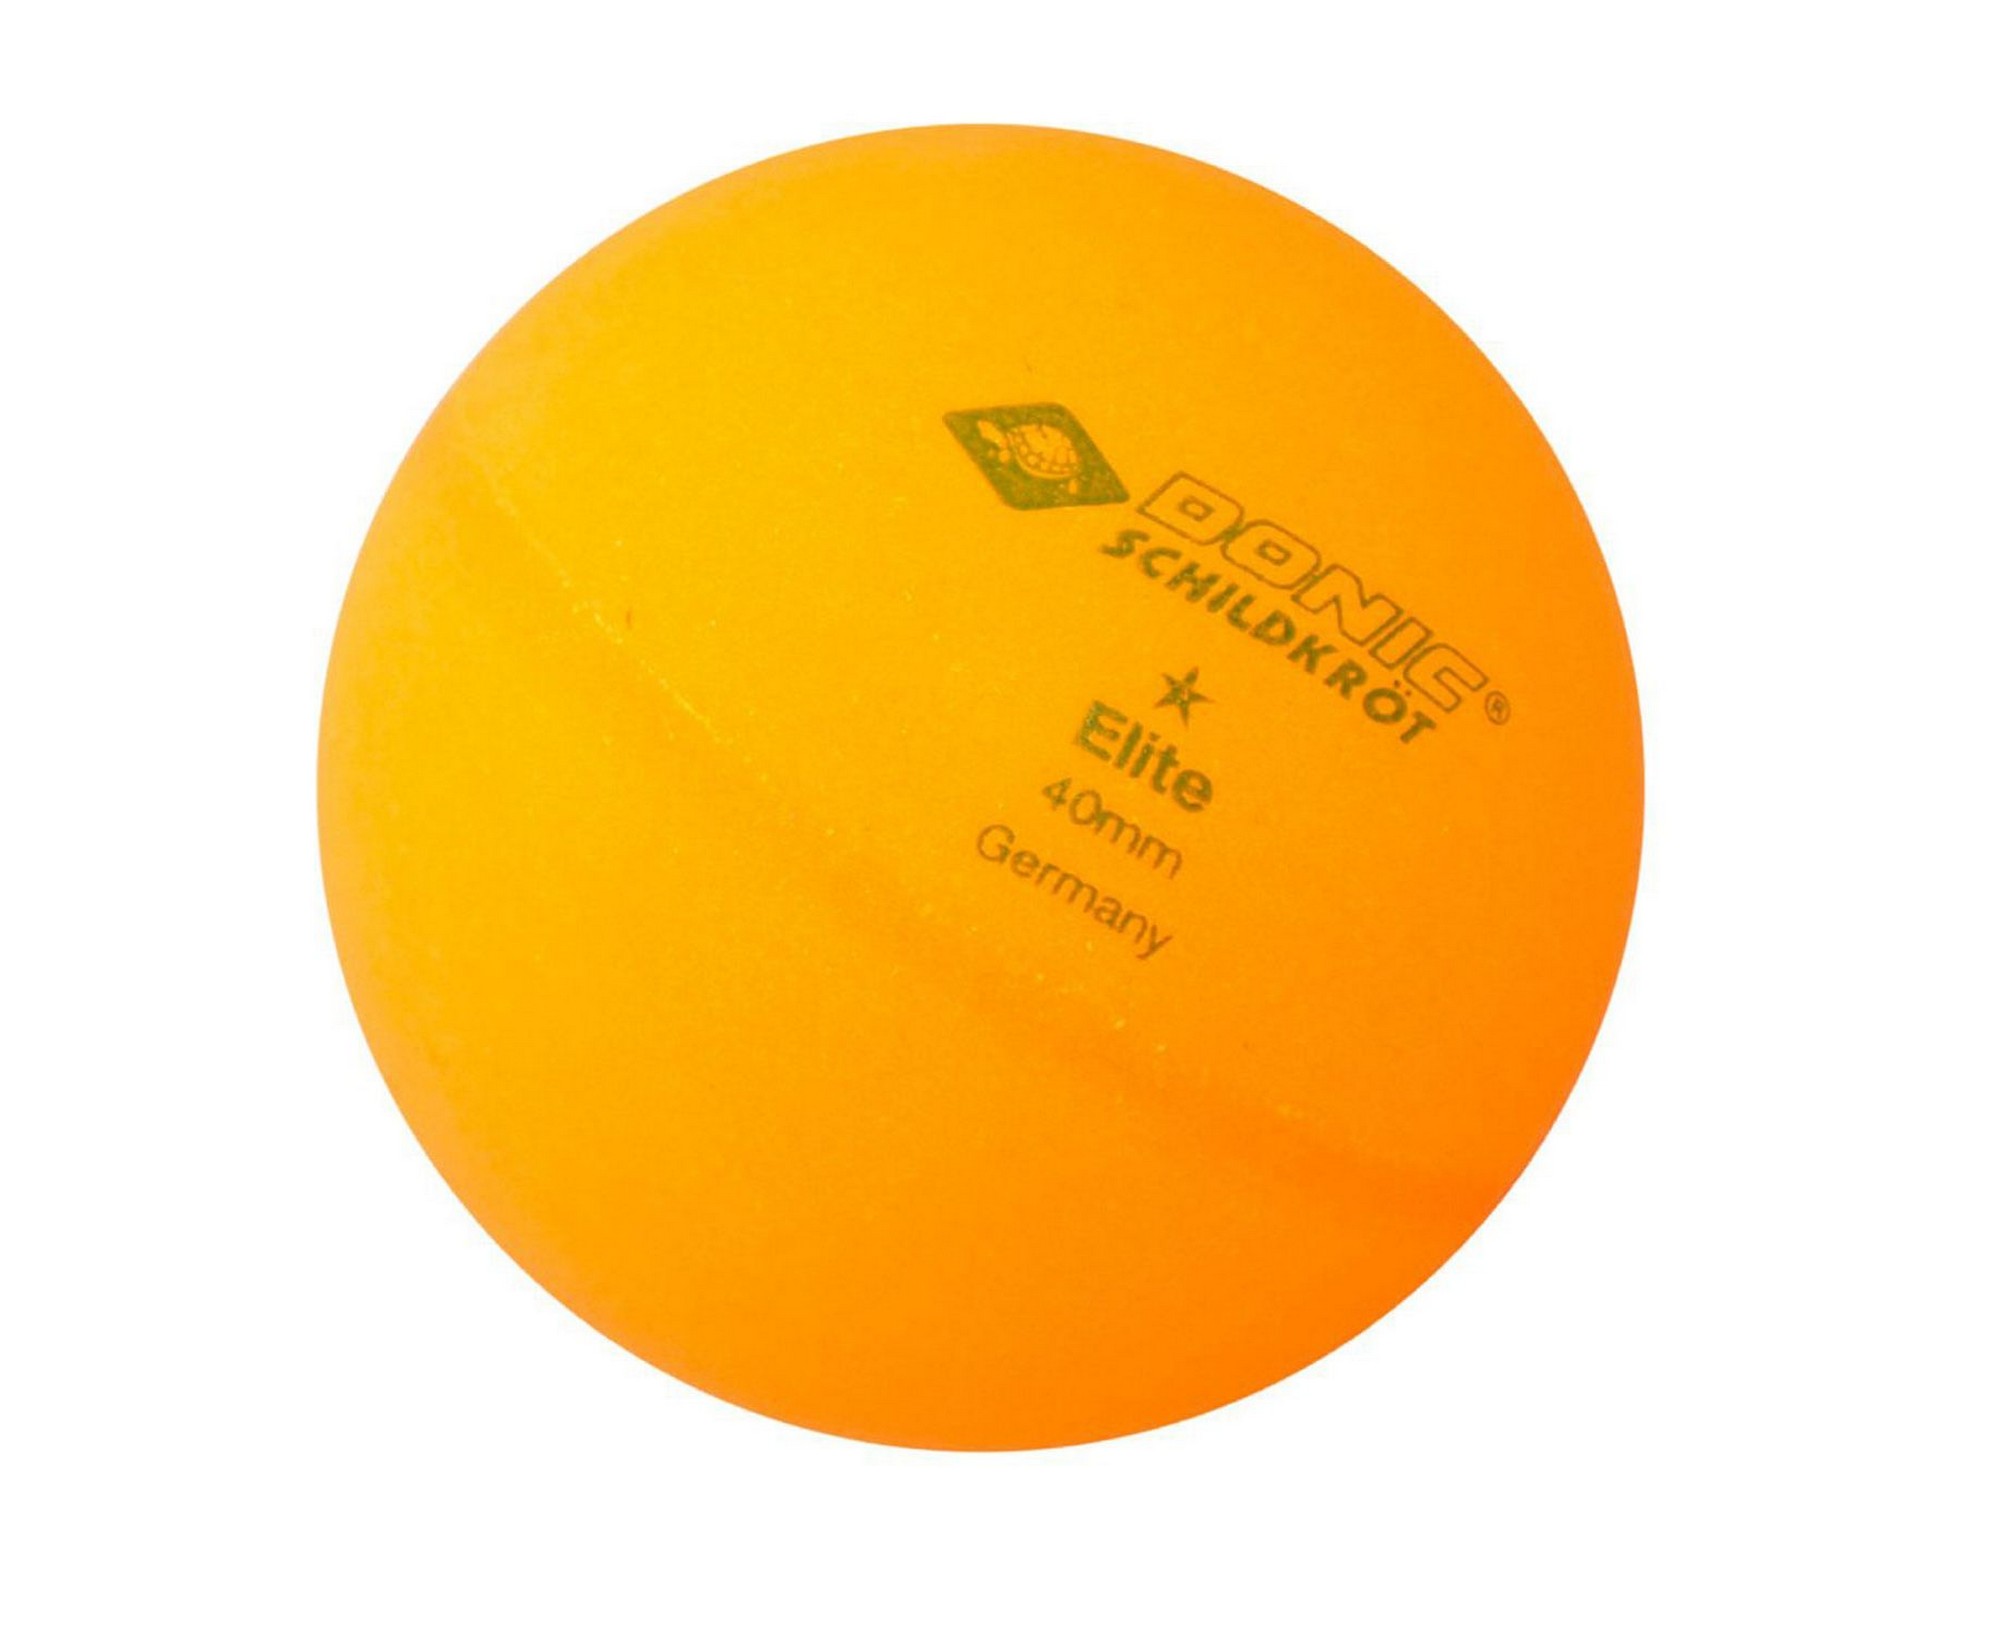 Мячи для настольного тенниса Donic Elite 1, 6 штук 618017 оранжевый 2000_1636